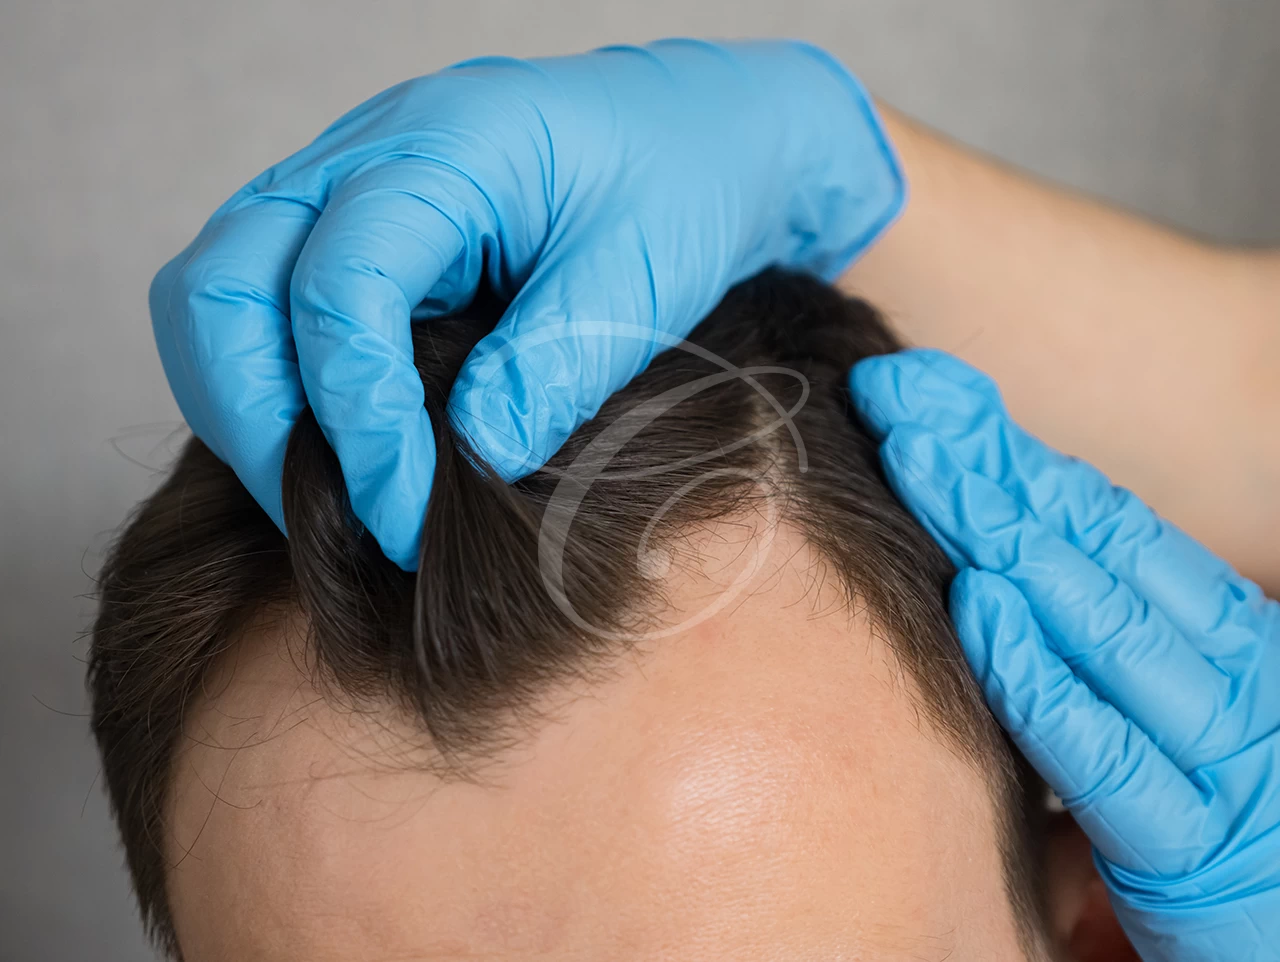 علاج تساقط الشعر والصلع والشعر الخفيف بزراعة الشعر